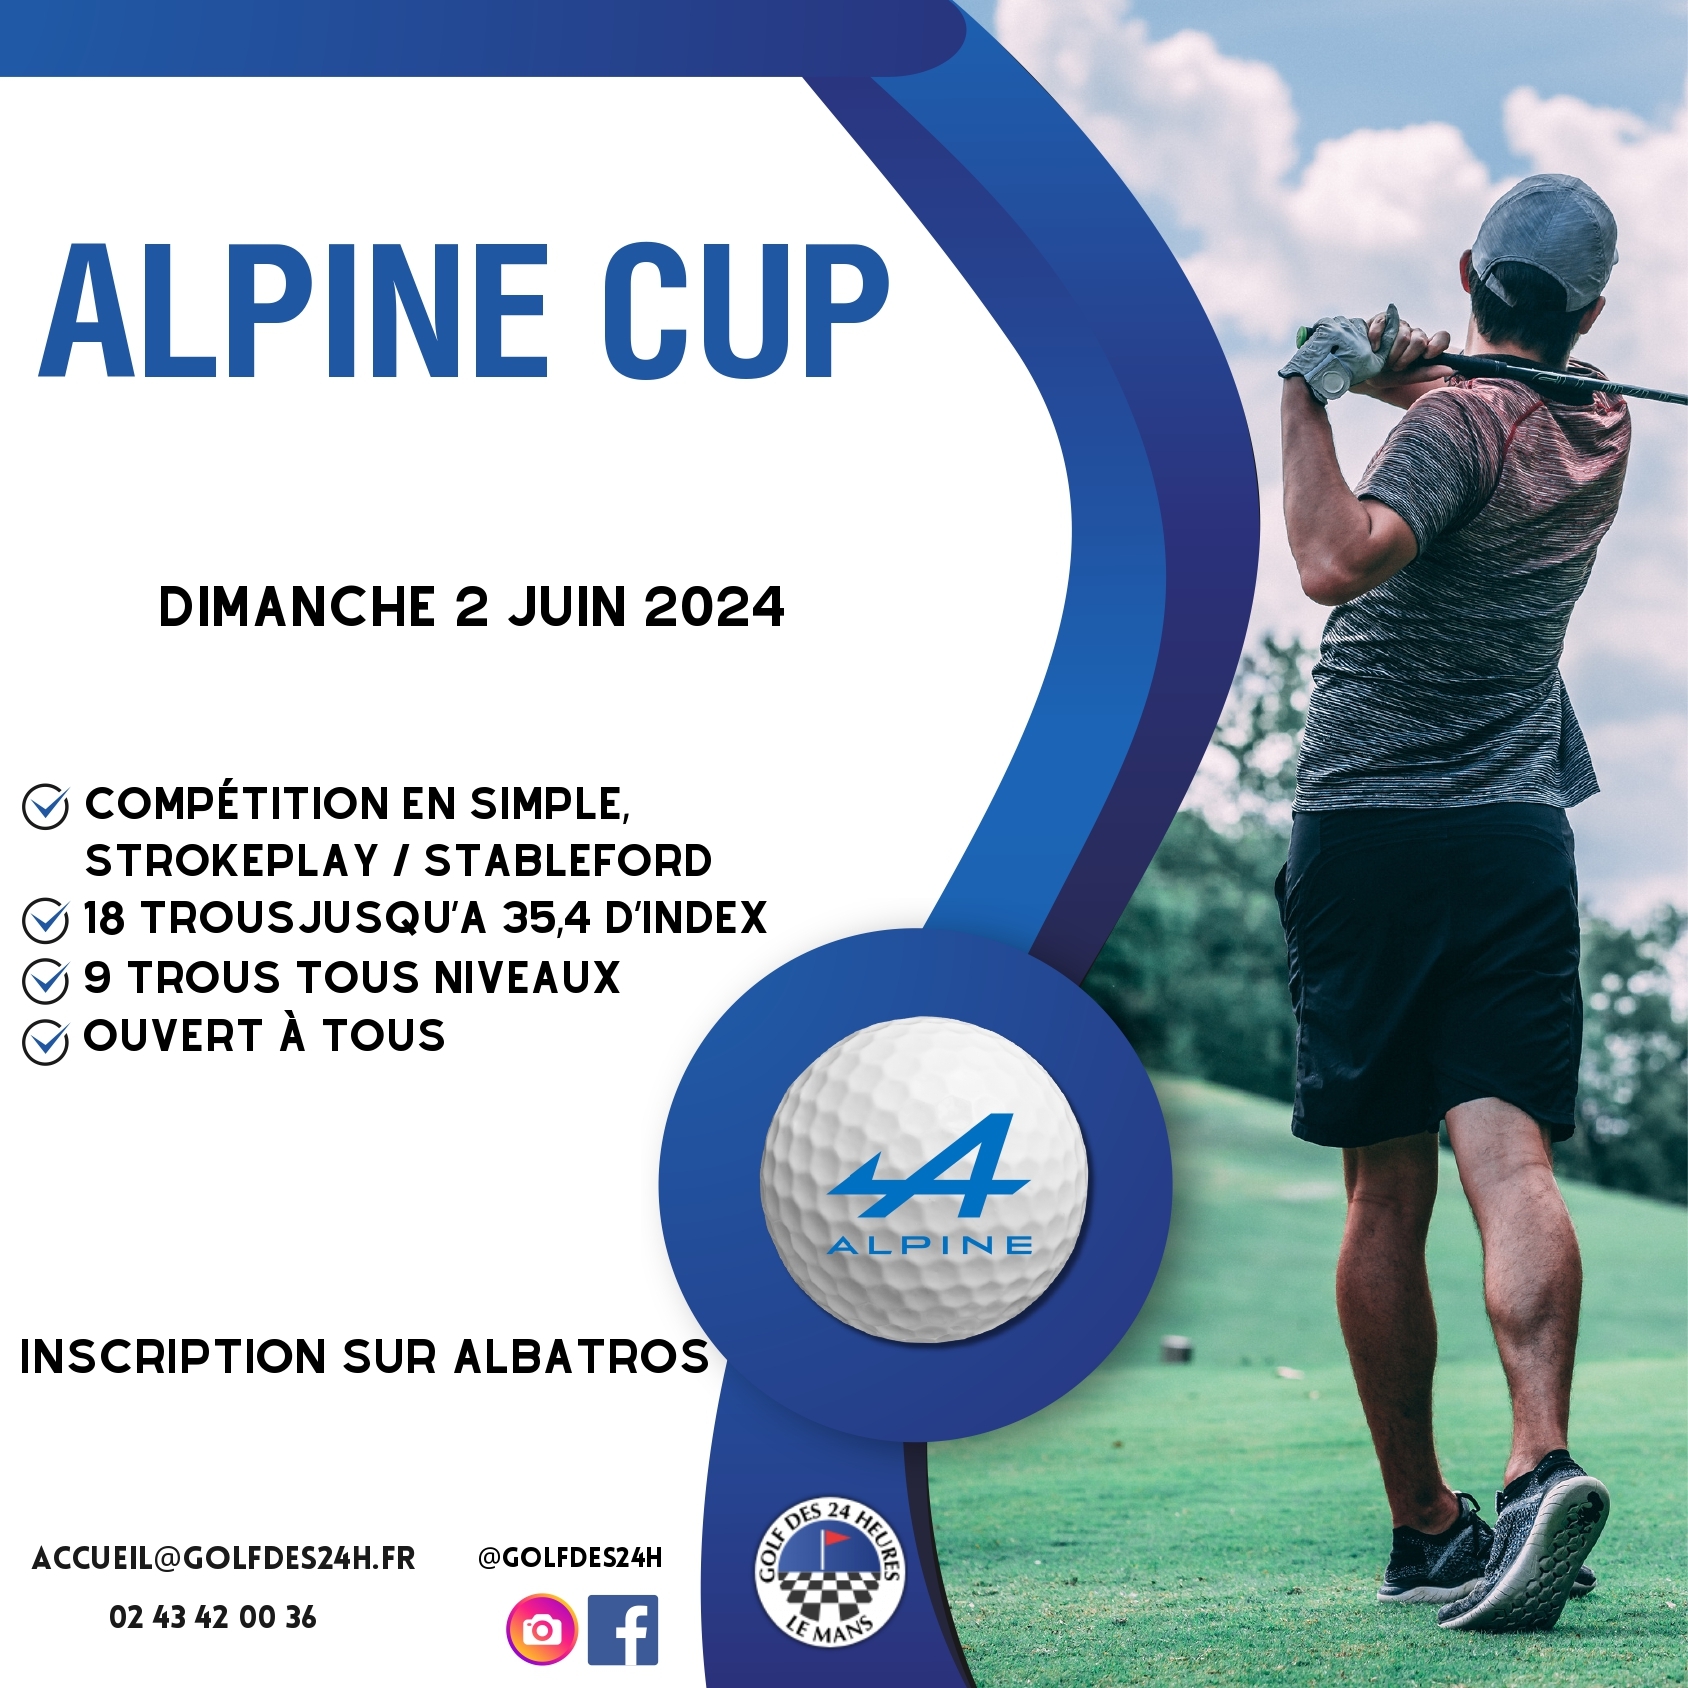 ALPINE CUP 2024